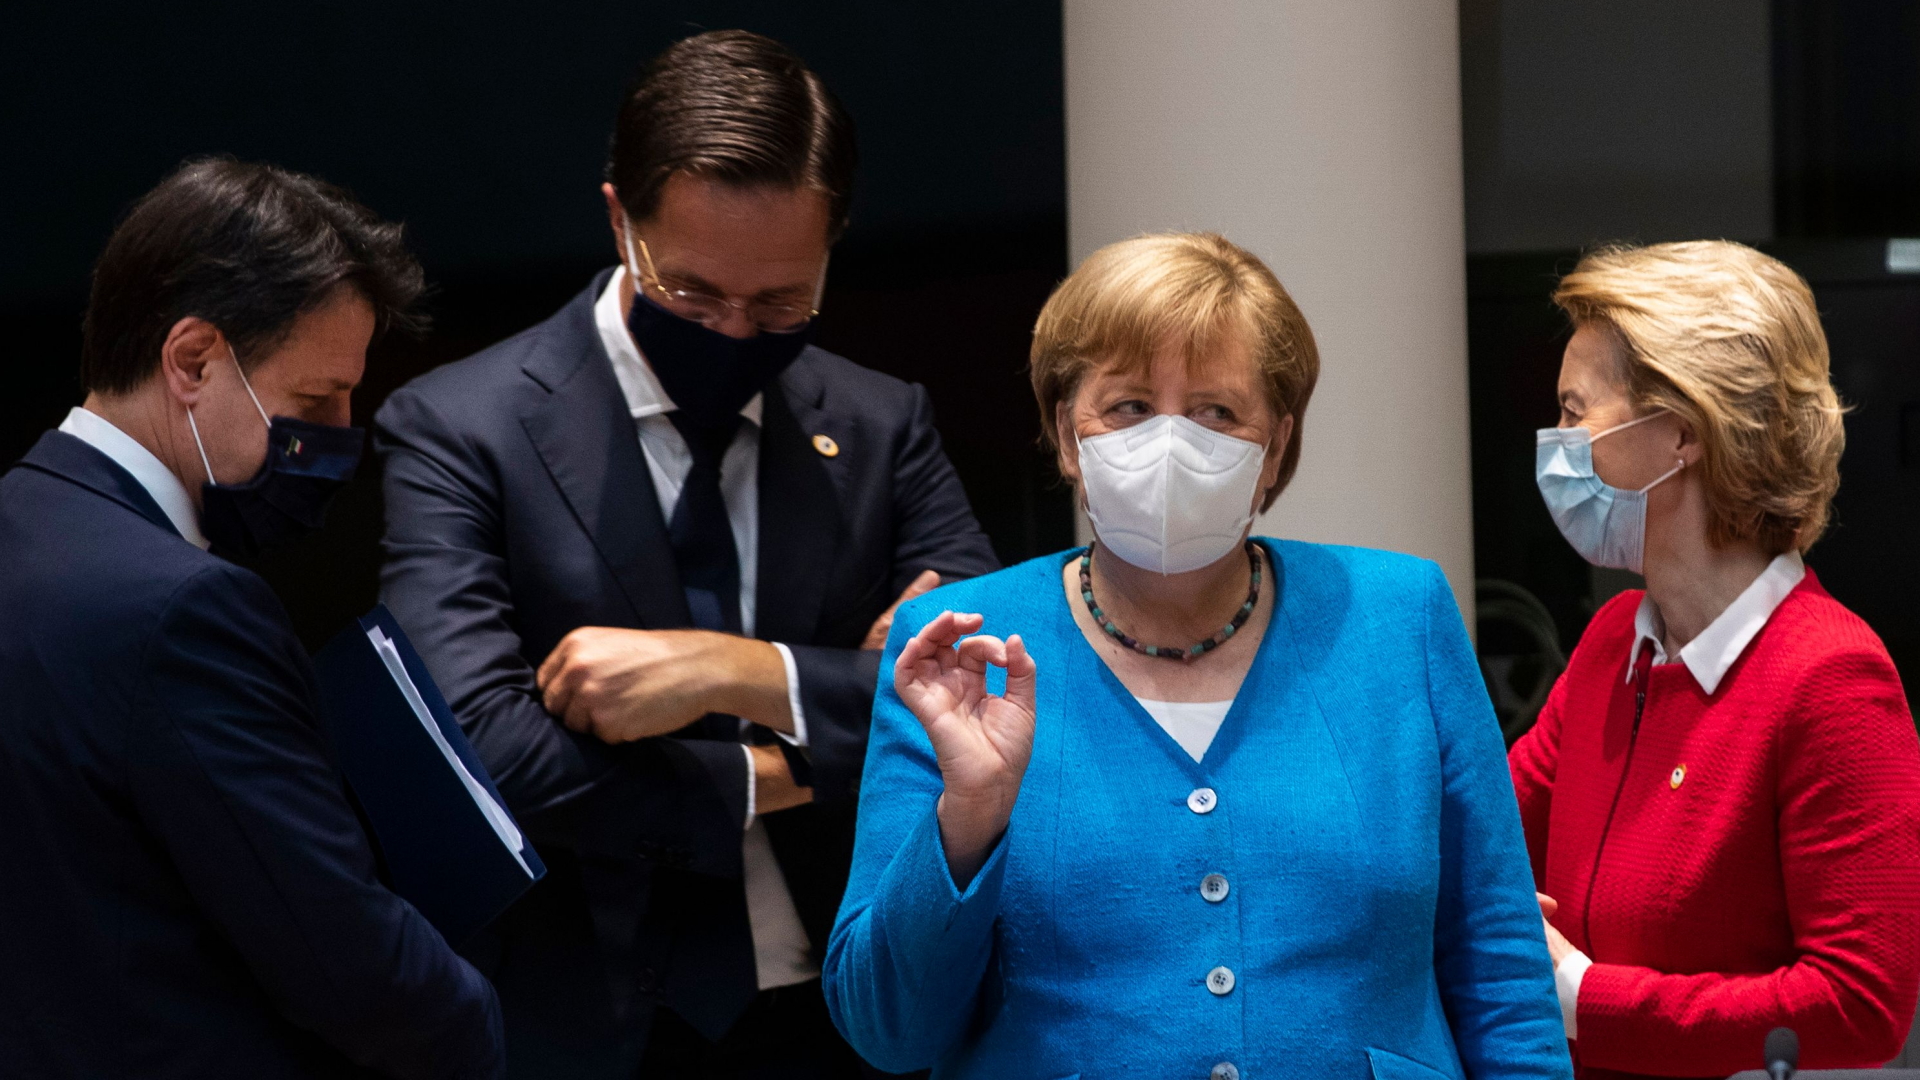 Giuseppe Conte, Mark Rutte, Angela Merkel und Ursula von der Leyen beim EU-Gipfel.